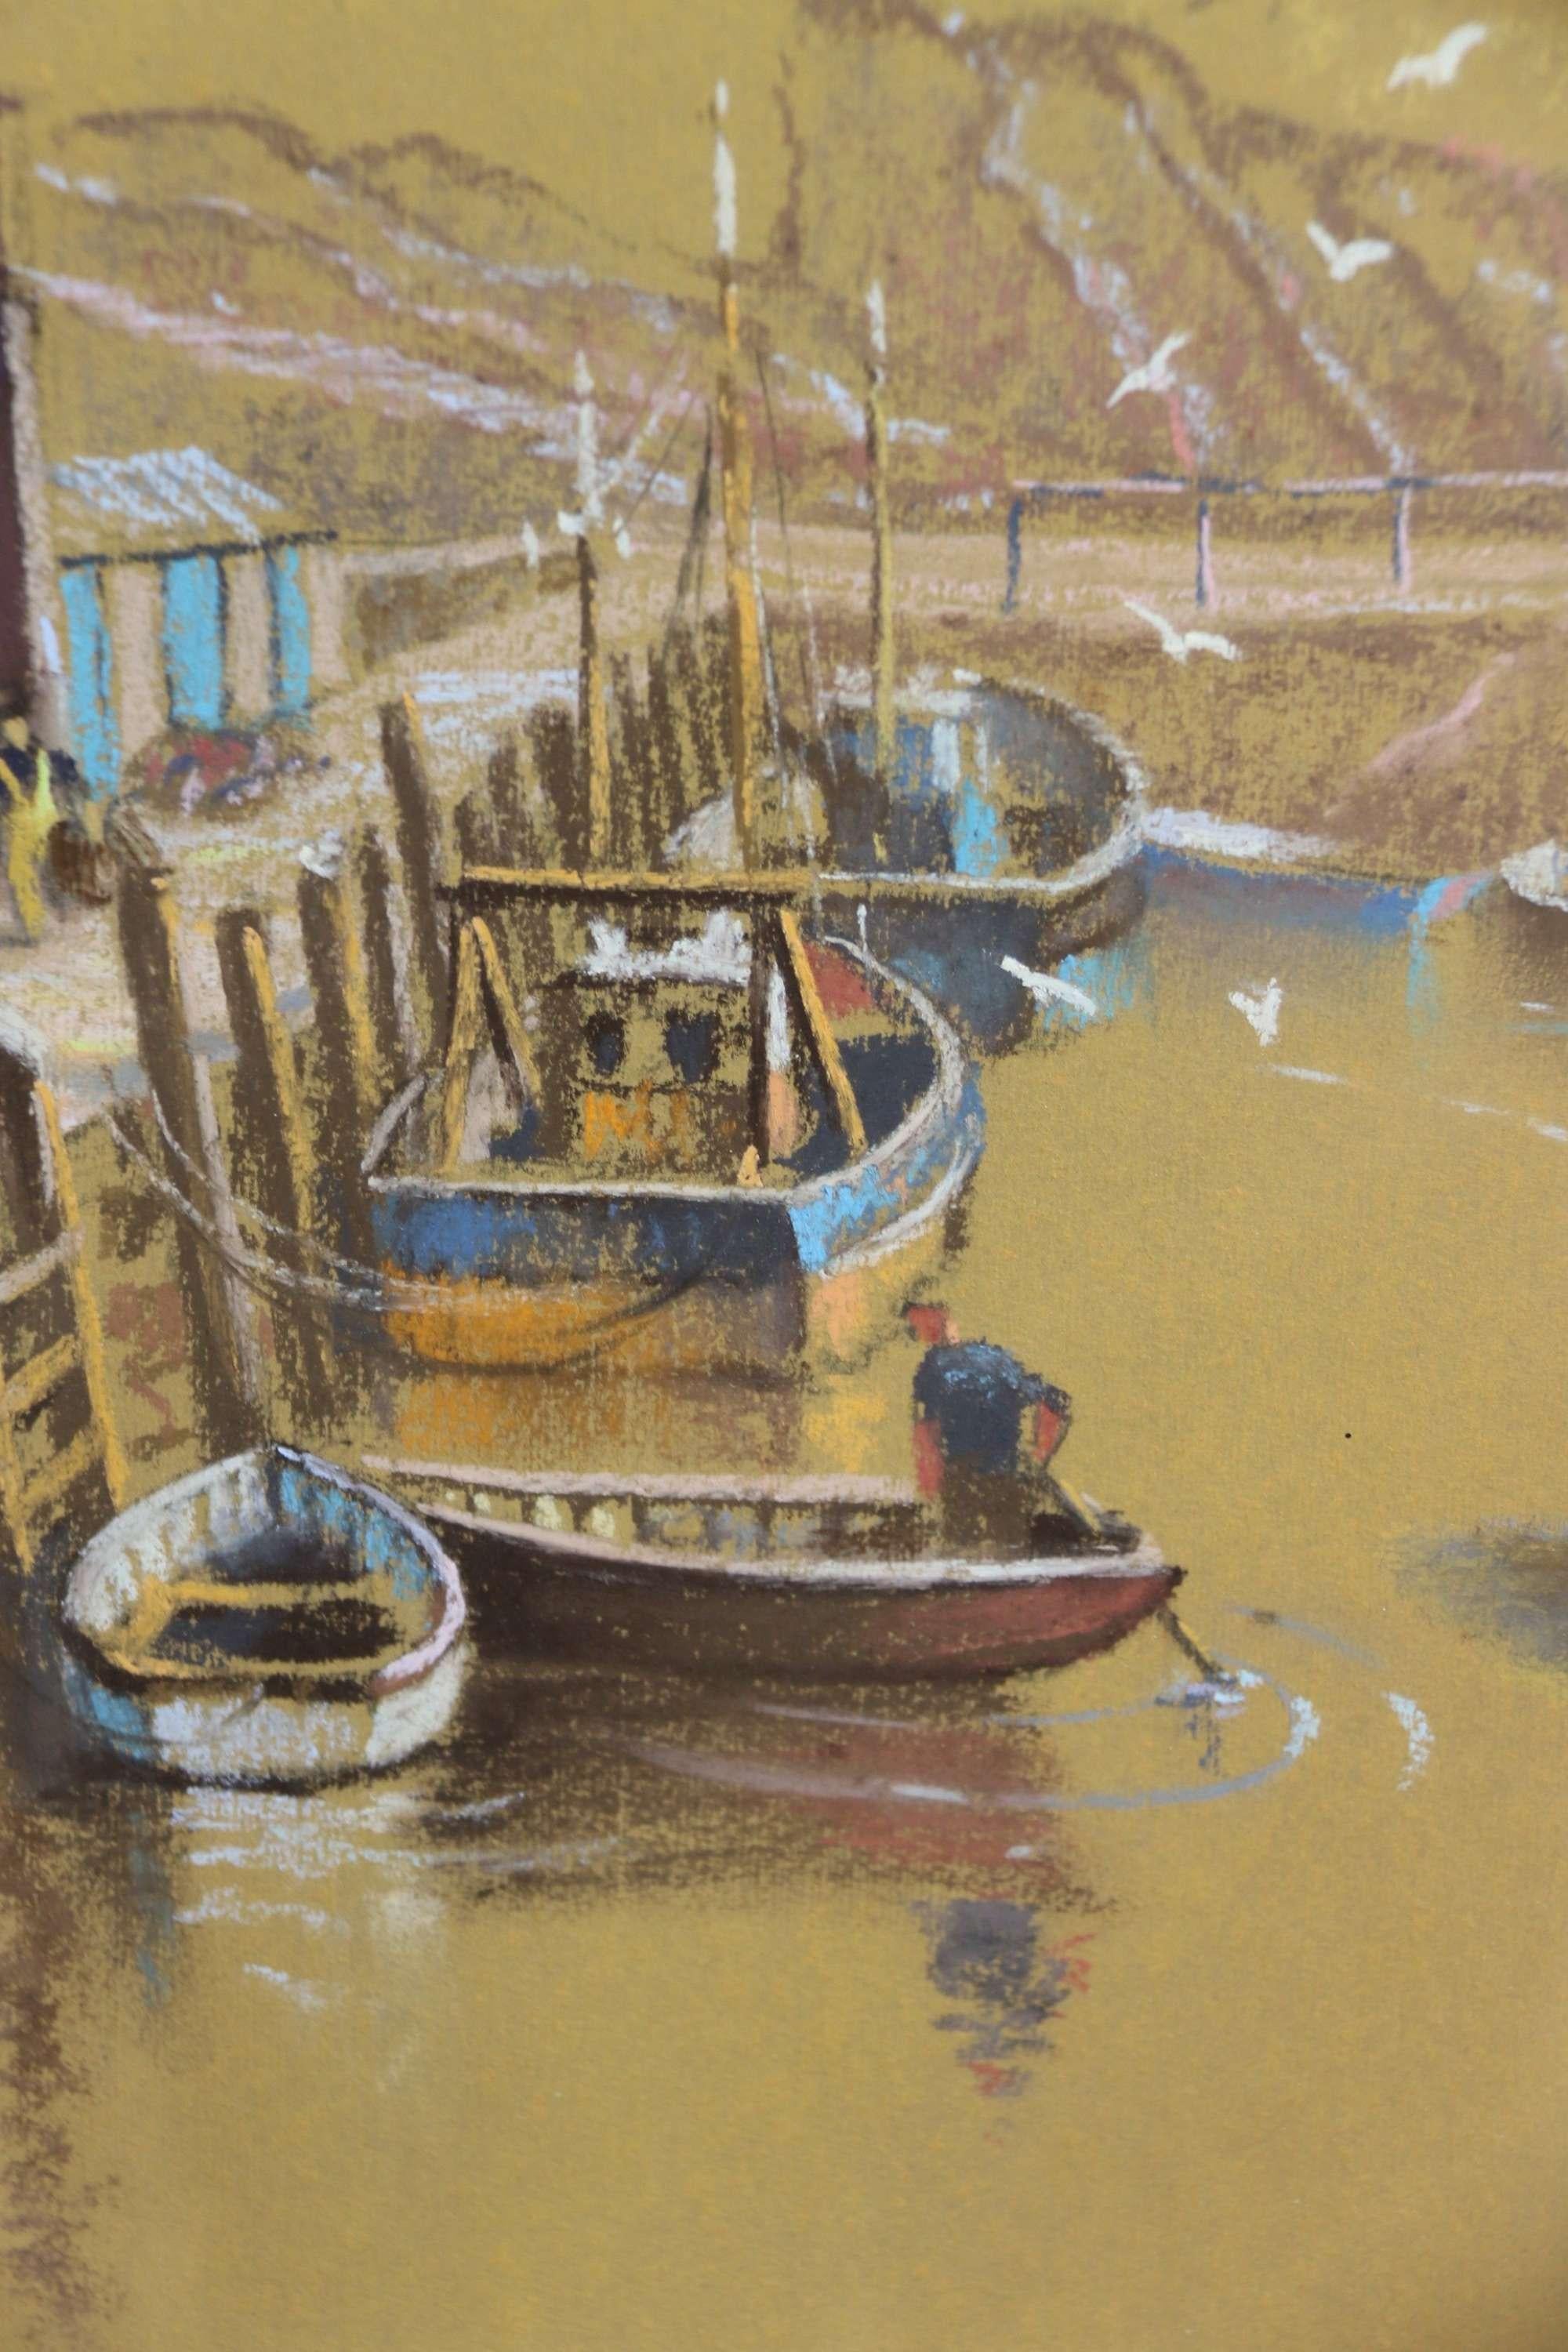 Un ravissant dessin au pastel du port de Polperro, en Cornouailles, C.C. 1950 par Roy Stringfellow.

Cette vue au pastel des années 1950, très bien dessinée et exécutée, du port de pêche idyllique de Polperro, montre des bateaux amarrés et des